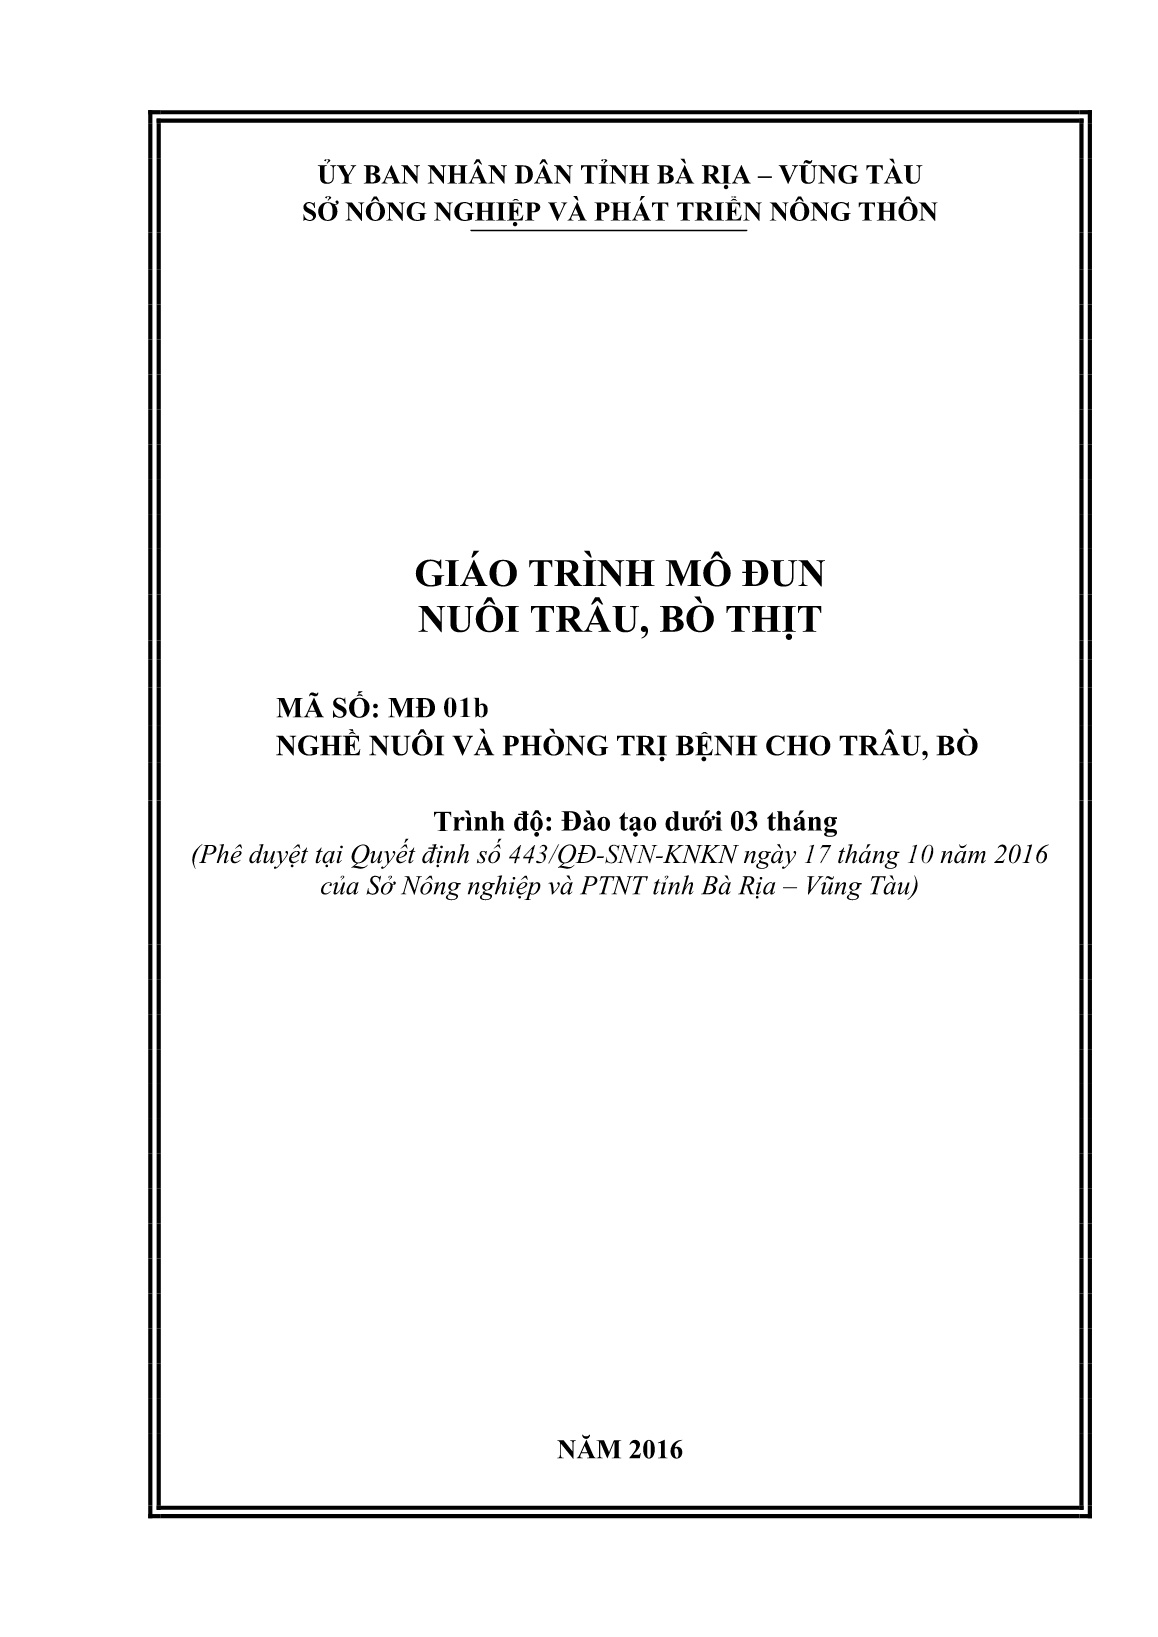 Giáo trình mô đun Nuôi trâu, bò thịt (Trình độ: Đào tạo dưới 3 tháng) trang 1